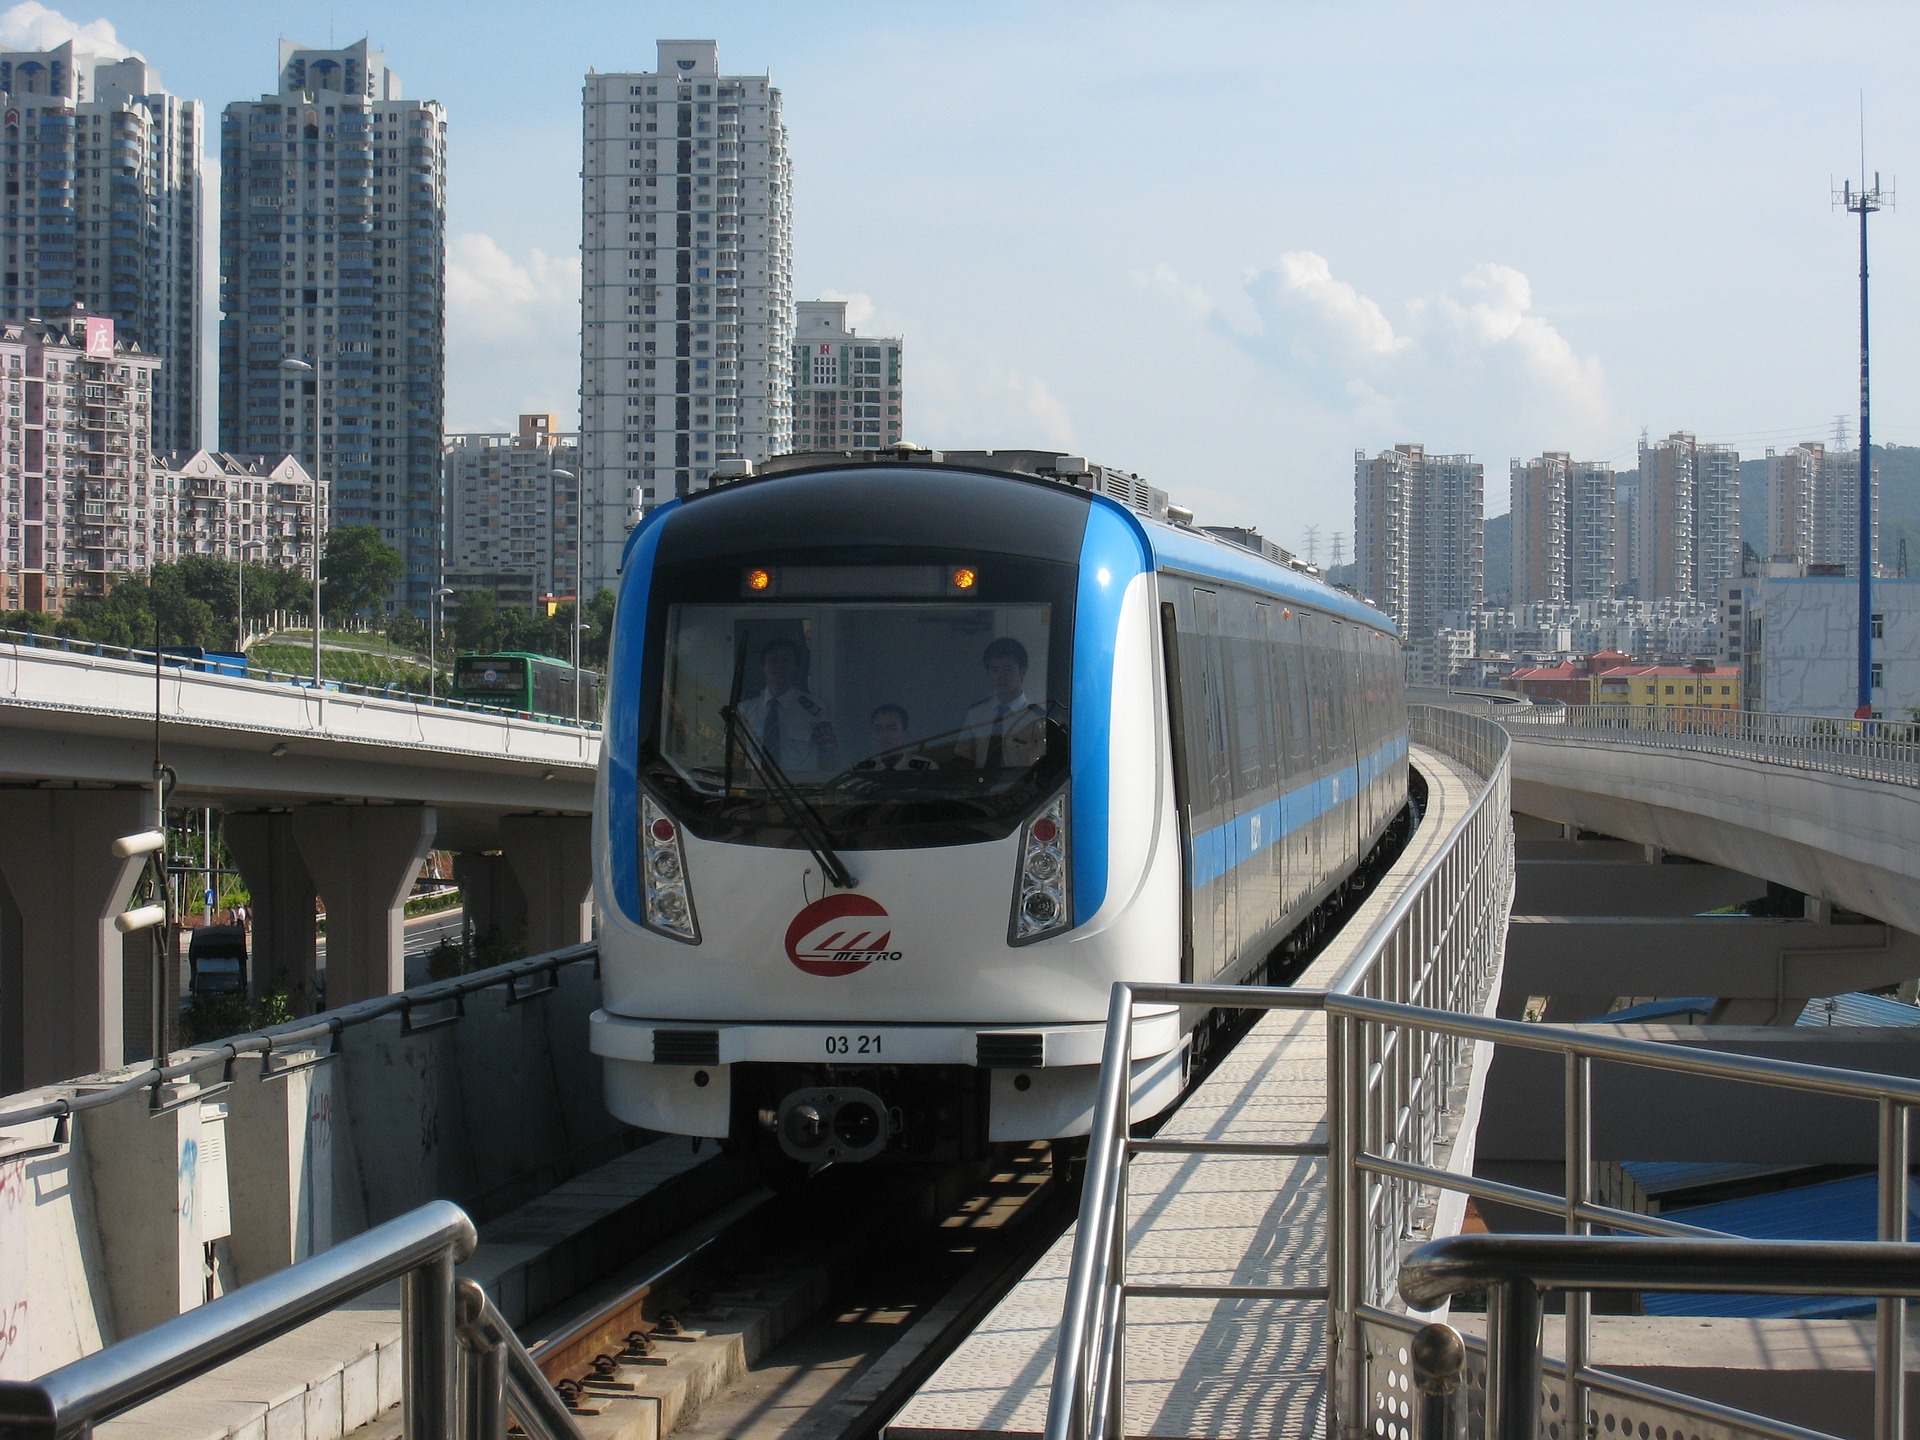 Cina. Consiglio di Stato e PCC: Shenzhen sarà città-modello globale per innovazione e sostenibilità